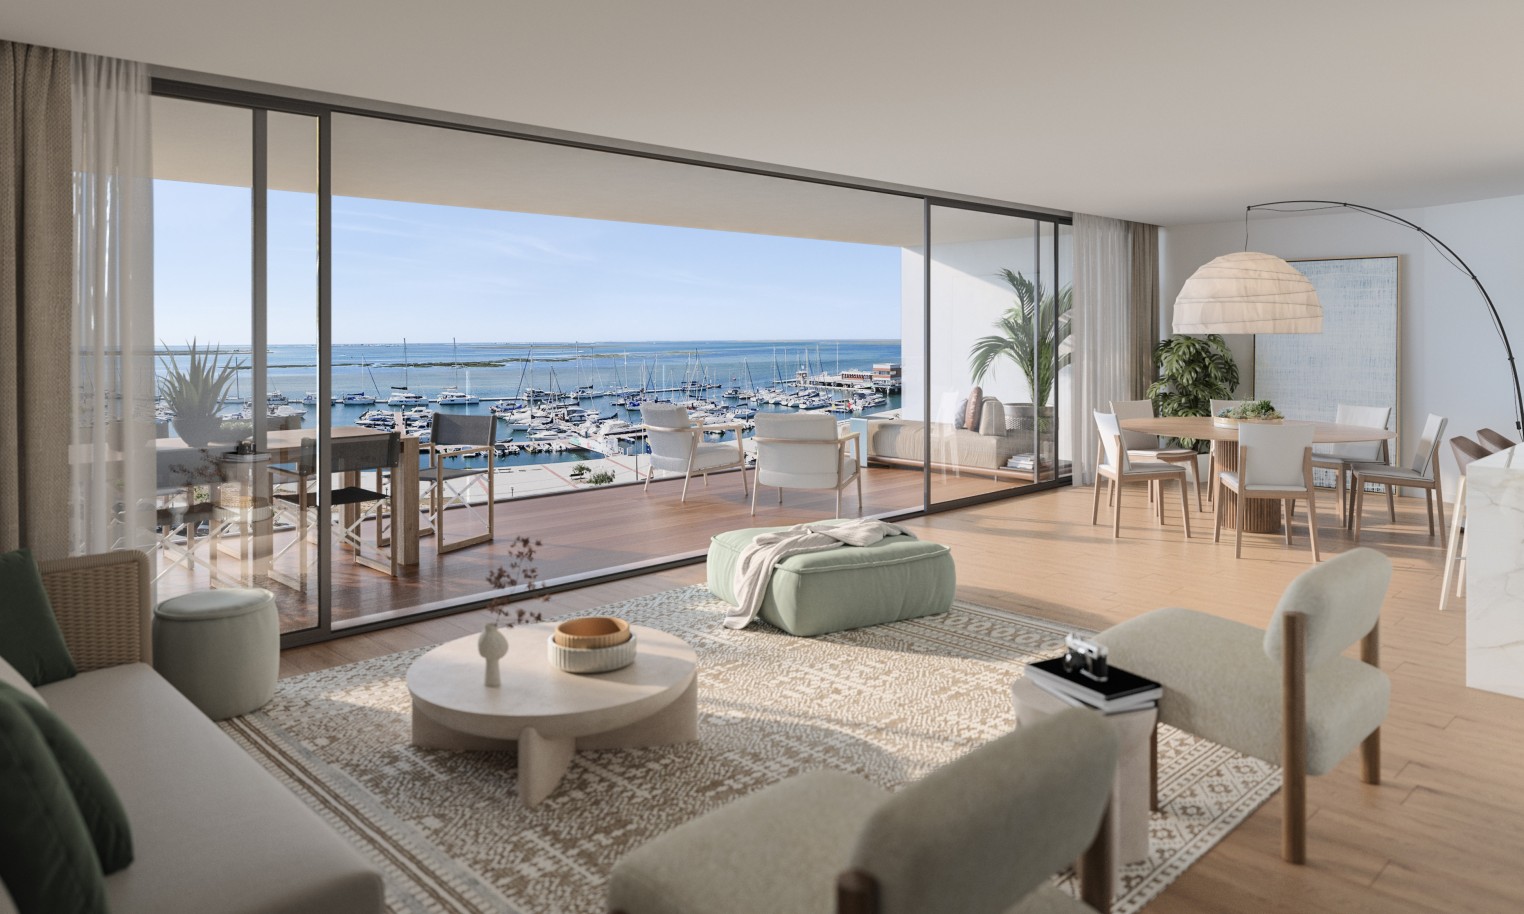 Appartements neufs avec vue sur mer, 1, 2 & 3 chambres, à vendre à Olhão, Algarve_244217